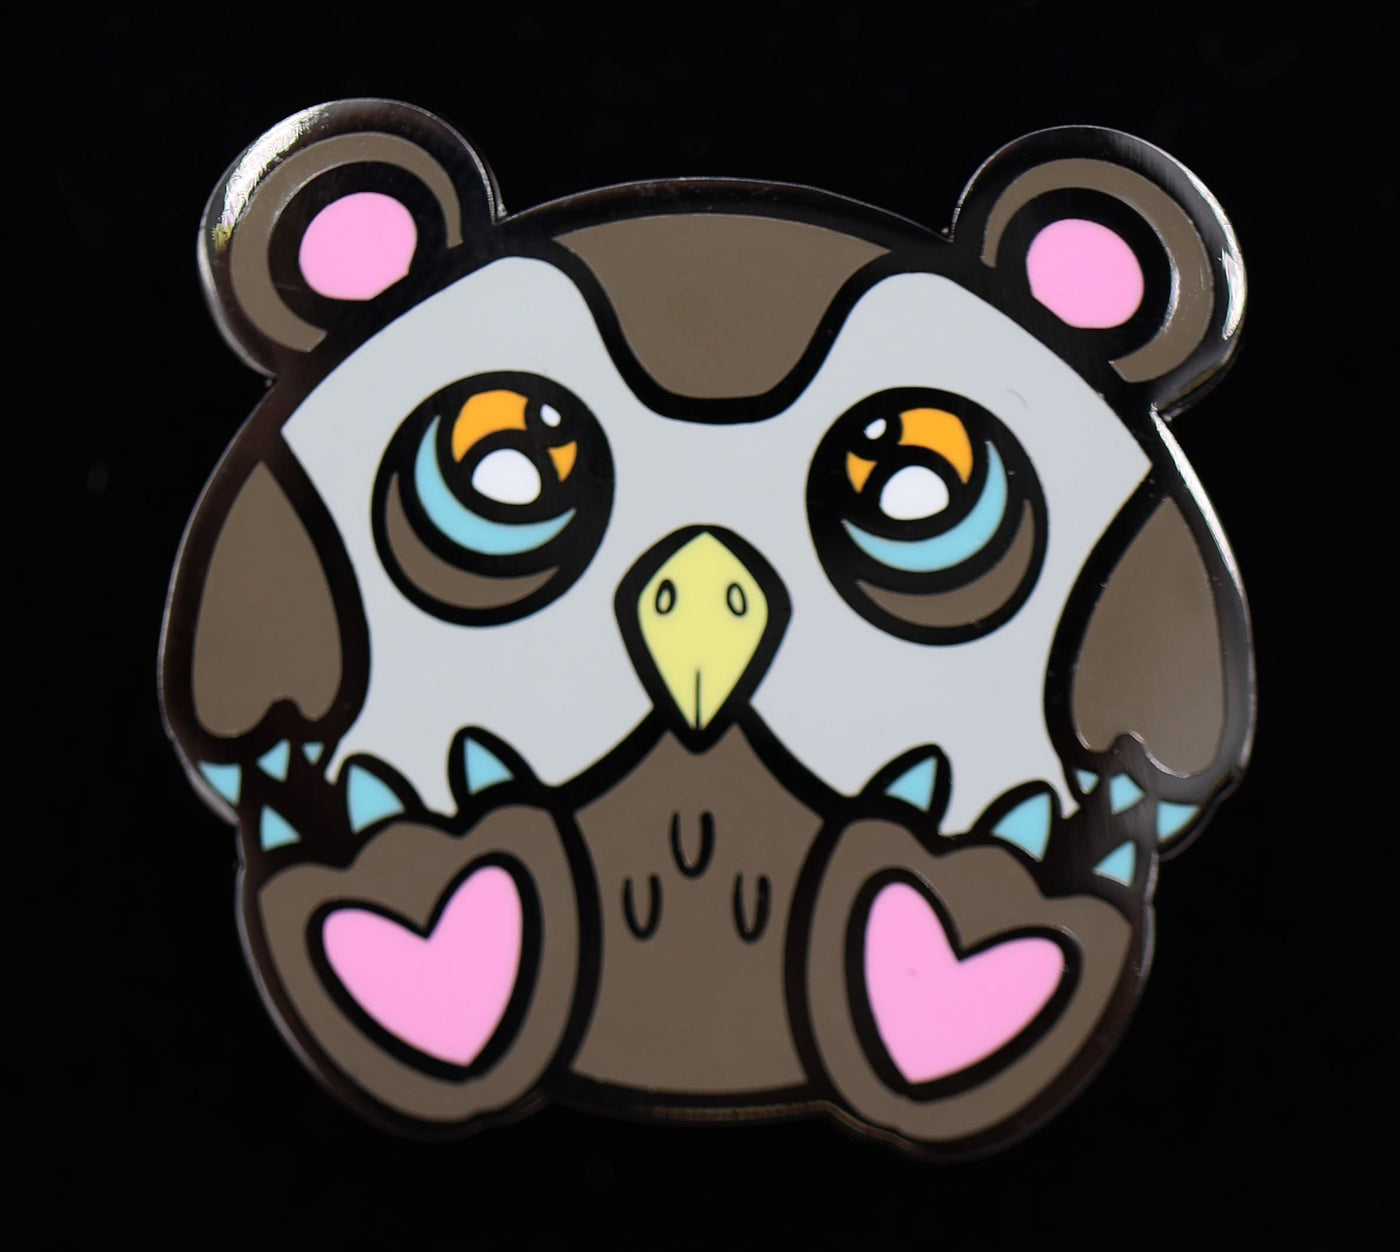 Baby Monster Pin - Owl Bear Enamel Pin Foam Brain Games